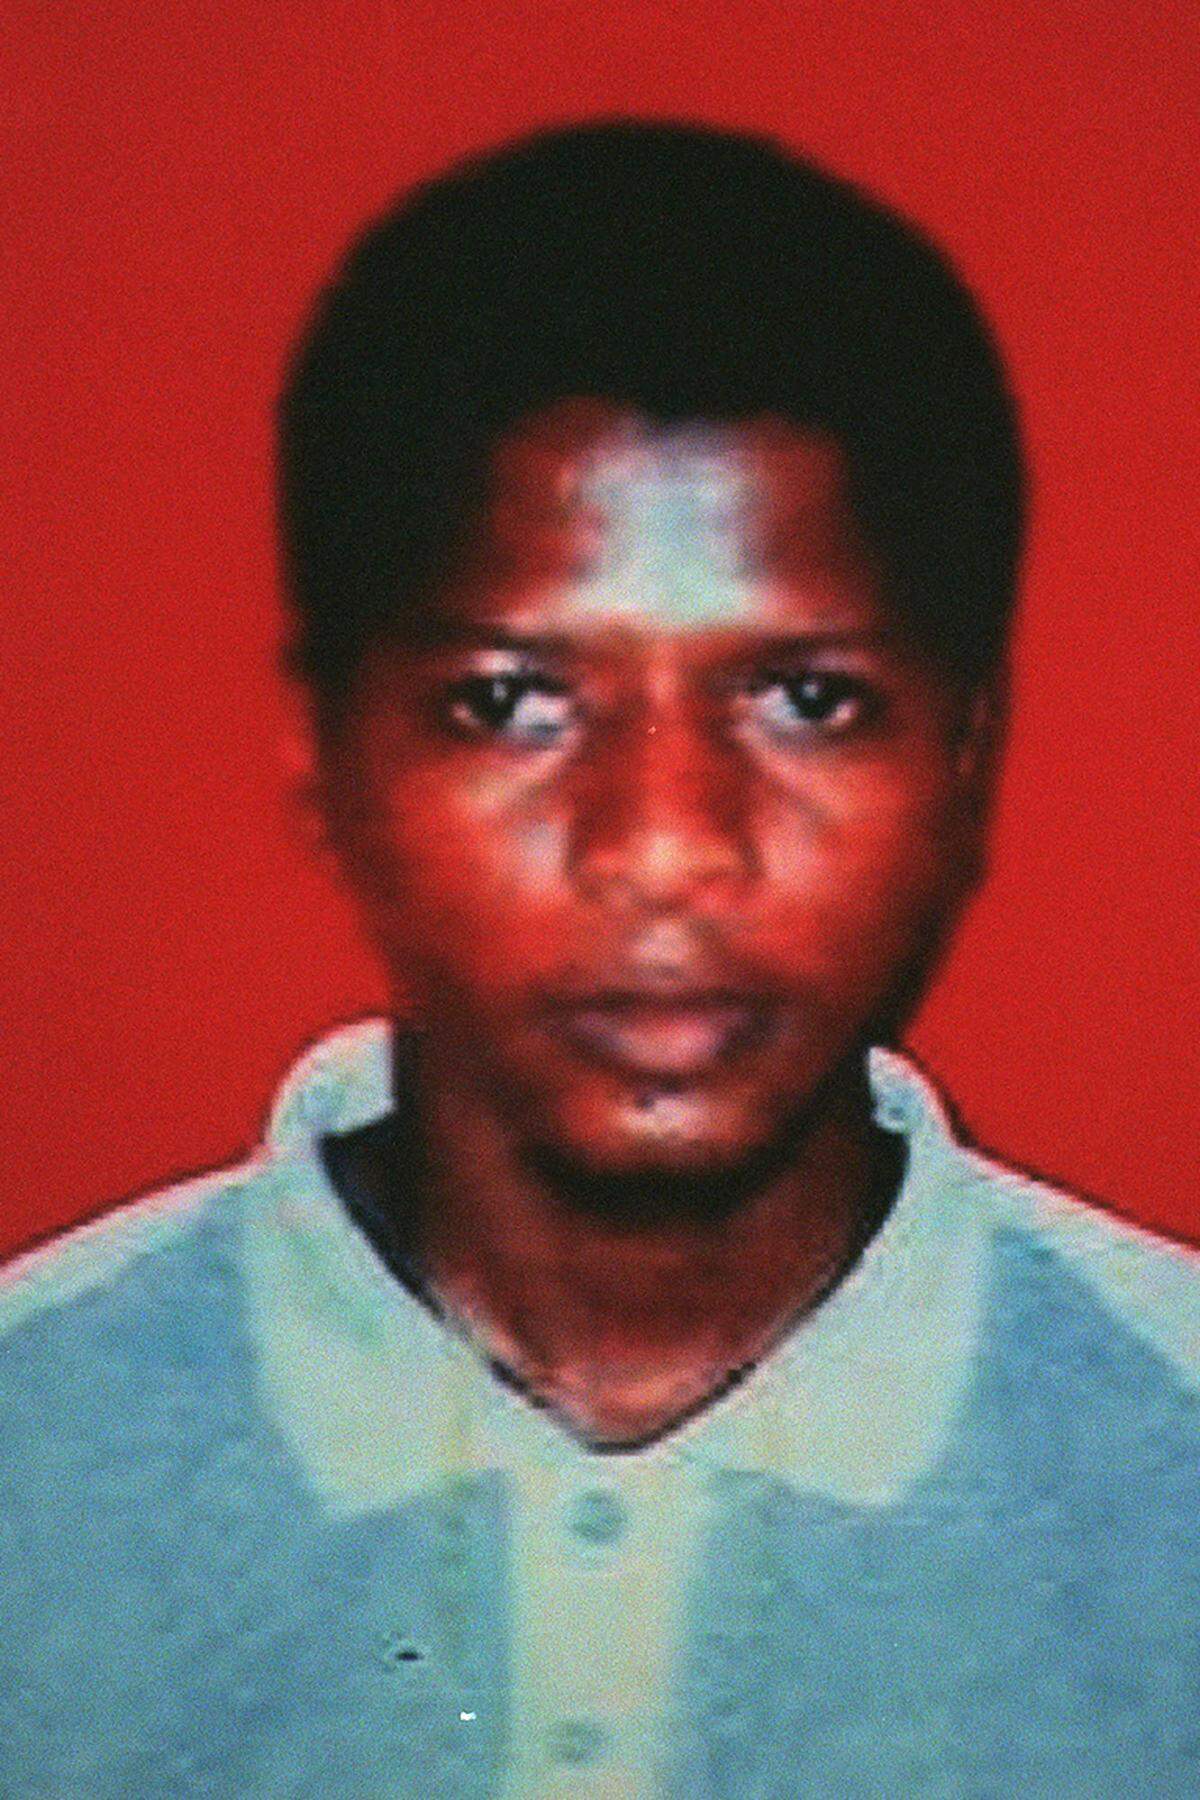 Im Juni 2009 - sieben Jahre nach der Errichtung des Lagers - wurde Ahmed Ghailani als erster Guantanamo-Häftling zu einem zivilen Gerichtsverfahren in die USA gebracht. Ghailani galt als einer der 14 "High value"-Gefangenen, die 2006 nach Guantanamo gebracht wurden. Der mutmaßliche al-Qaida-Terrorist soll eine Hauptrolle bei den Terroranschlägen auf die US-Botschaften in Kenia und Tansania 1998 gespielt haben.